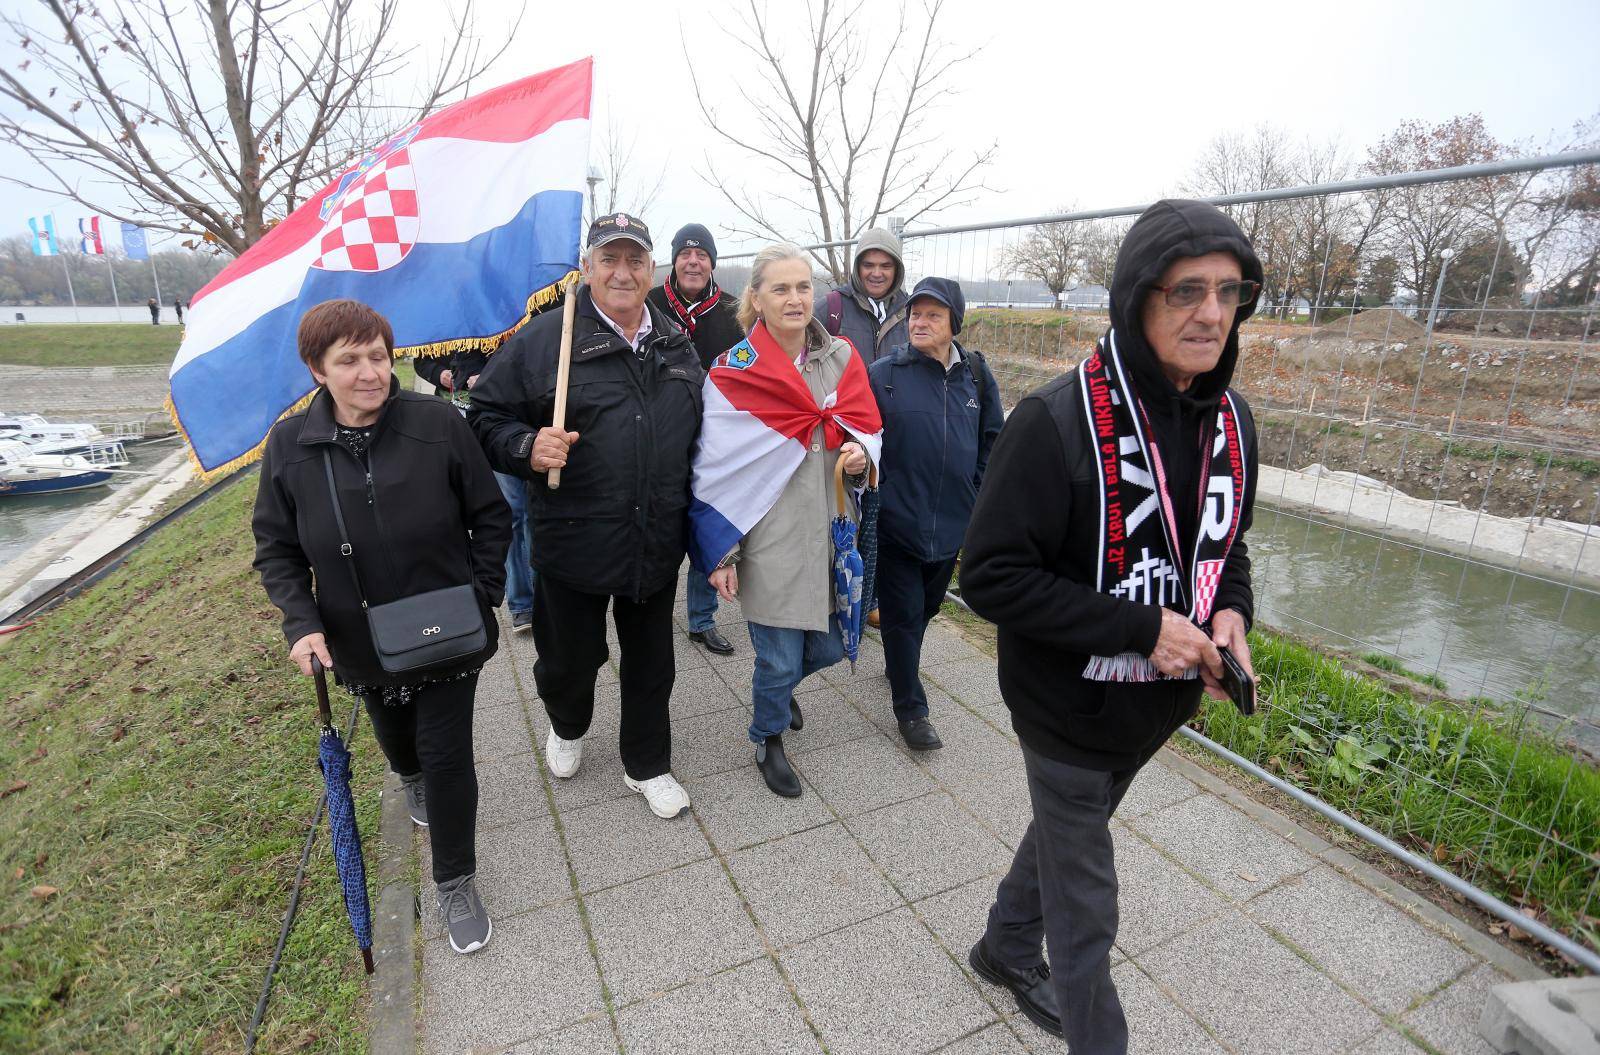 Vukovar: Okupljanje građana kako bi obilježili Dan sjećanja na žrtvu Vukovara